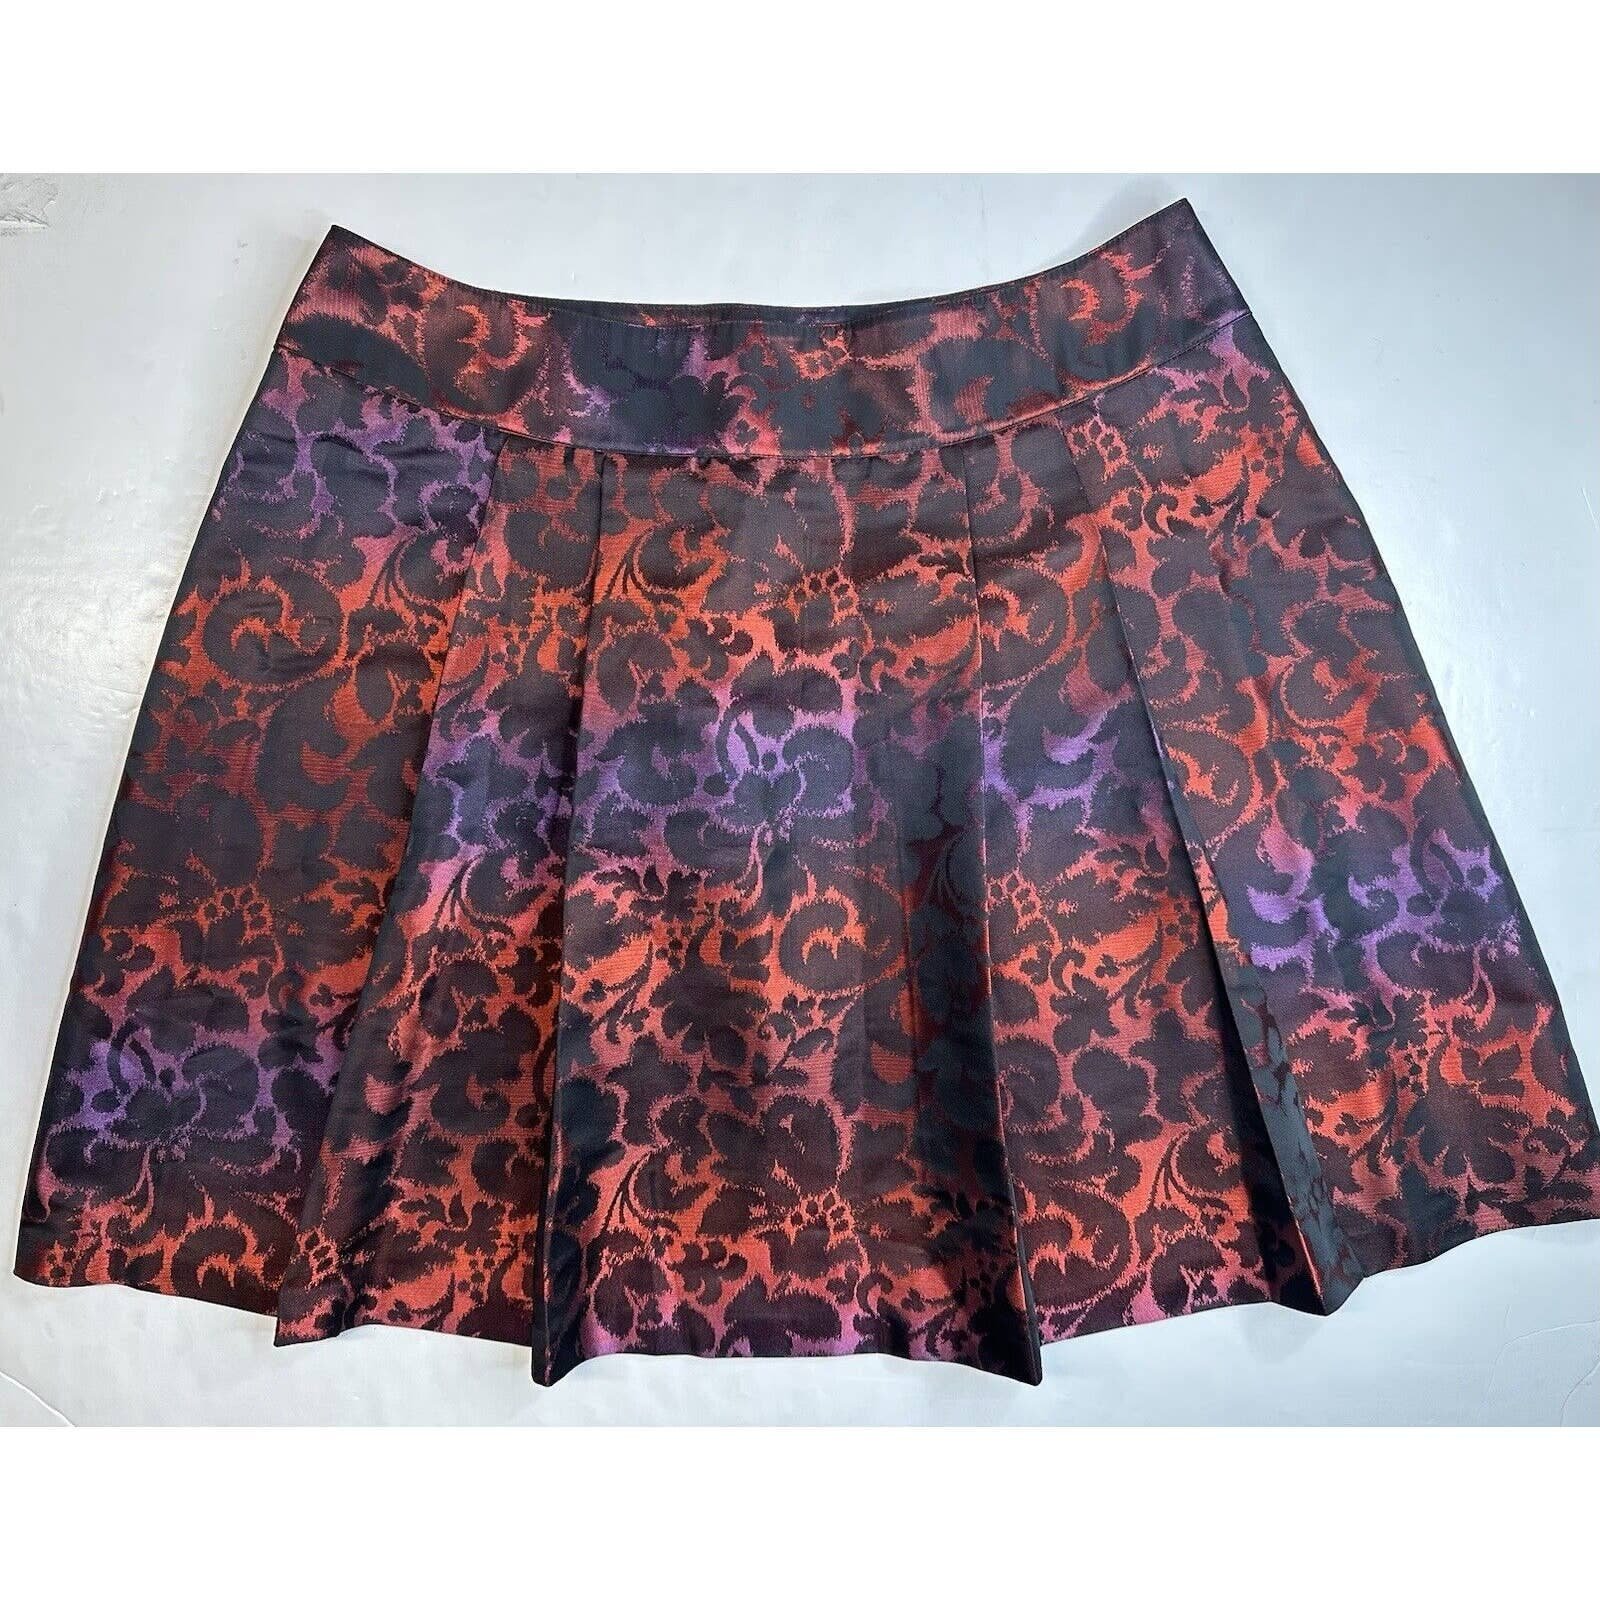 Comfortable Lane Bryant Floral Skirt 20 Red/Purple/Black Gradient A-Line Pleats Zipper EUC nd3wlntxd Online Exclusive